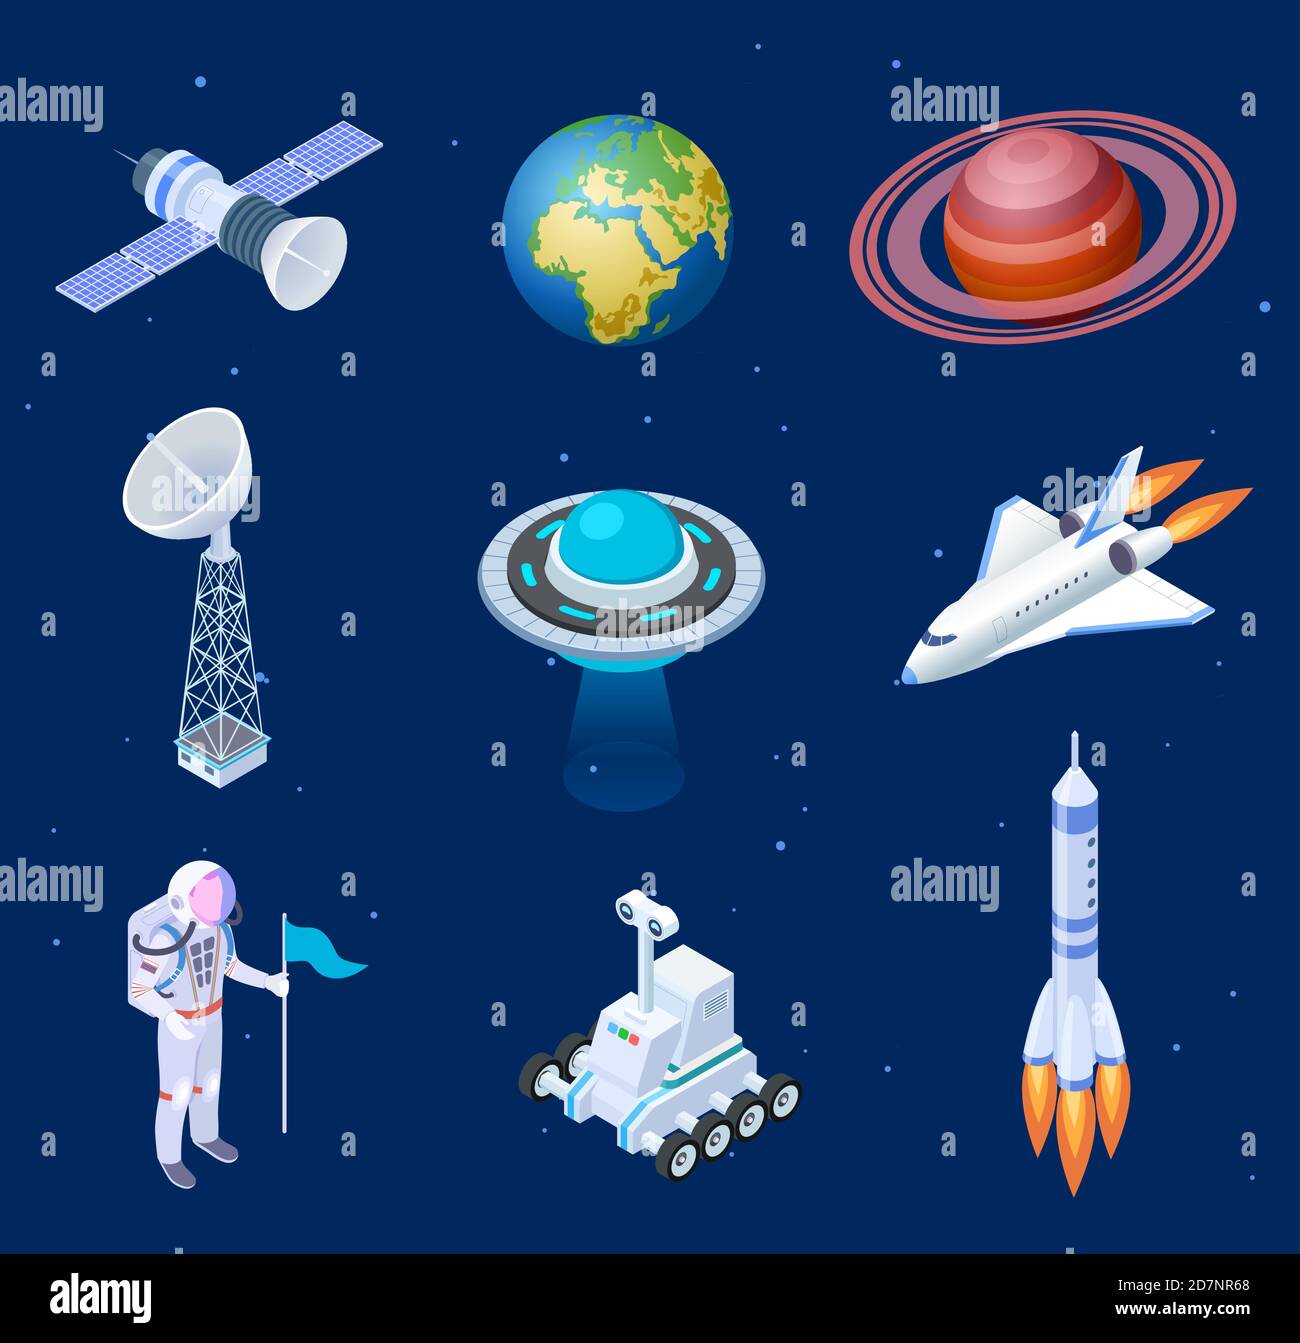 Isometrische Raumschiffe. Weltraum-Satelliten-Raketenteleskop Globus Raumfahrer Astronaut. Raketenschiff 3D isolierte Vektor-Set. Abbildung von Raketensatellit und Raumschiff im Universum Stock Vektor